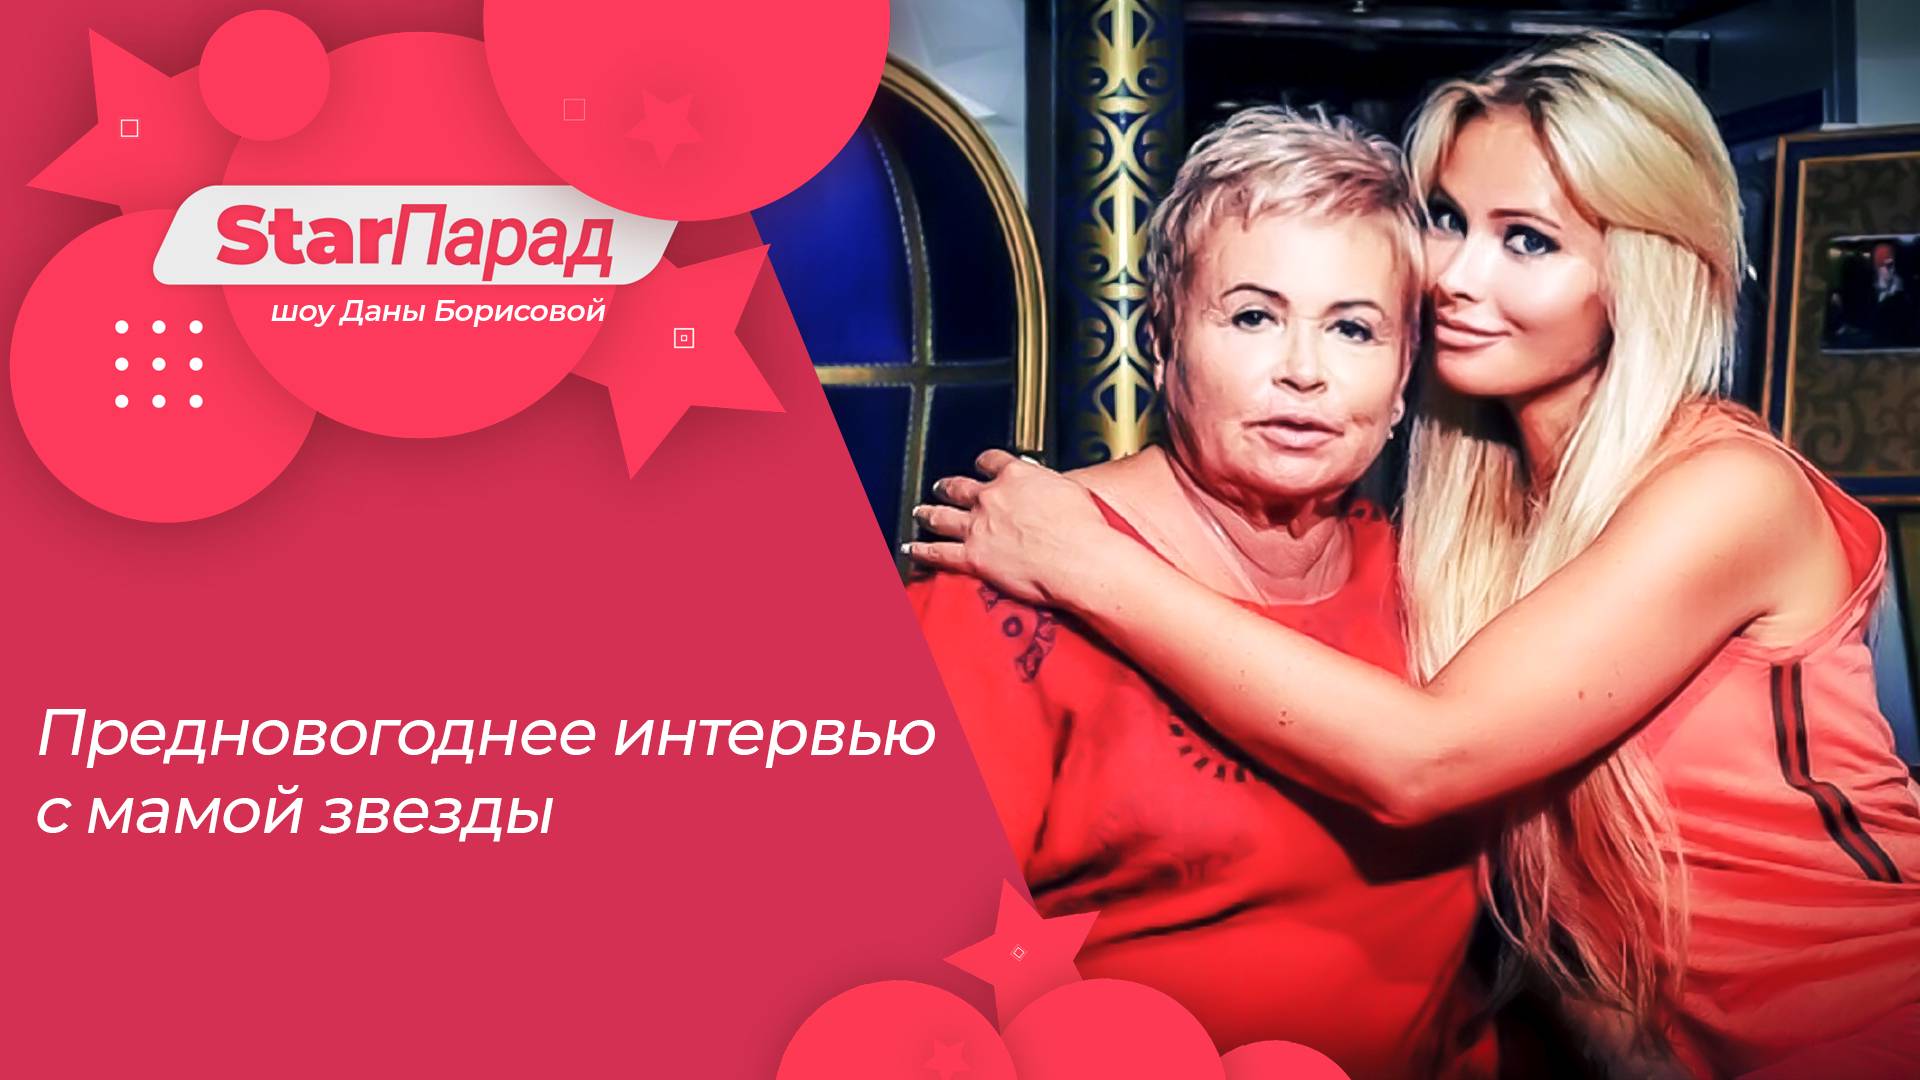 Star Парад с Даной Борисовой. Предновогоднее интервью с мамой звезды 